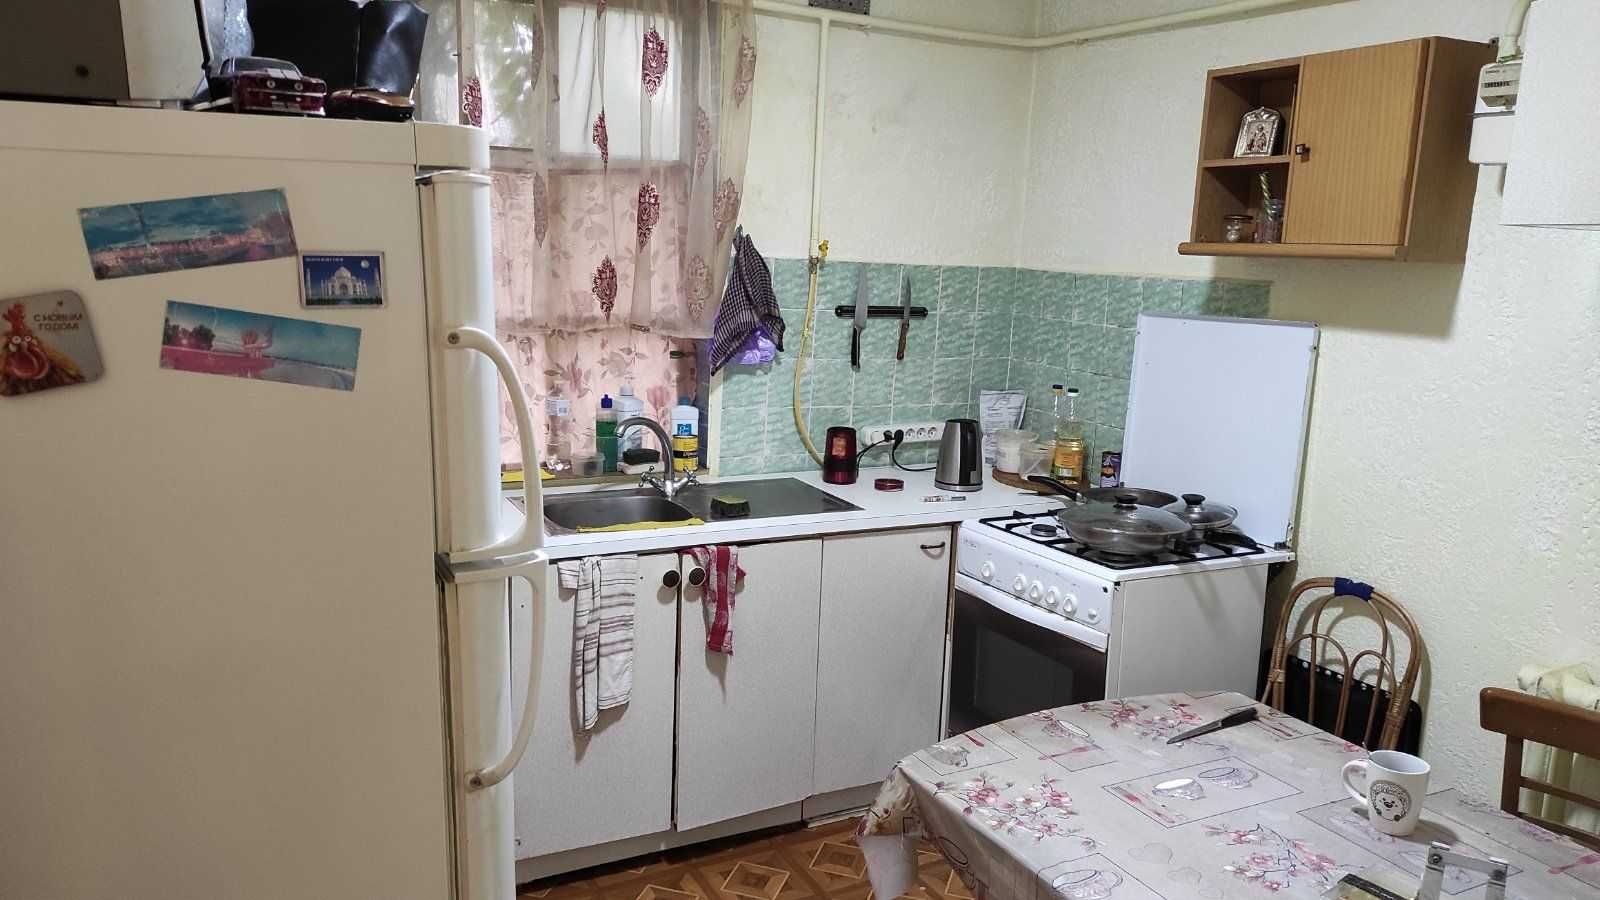 Отличная цена на 2-хэтажный дом в Одессе, 4 комнаты, море рядом !